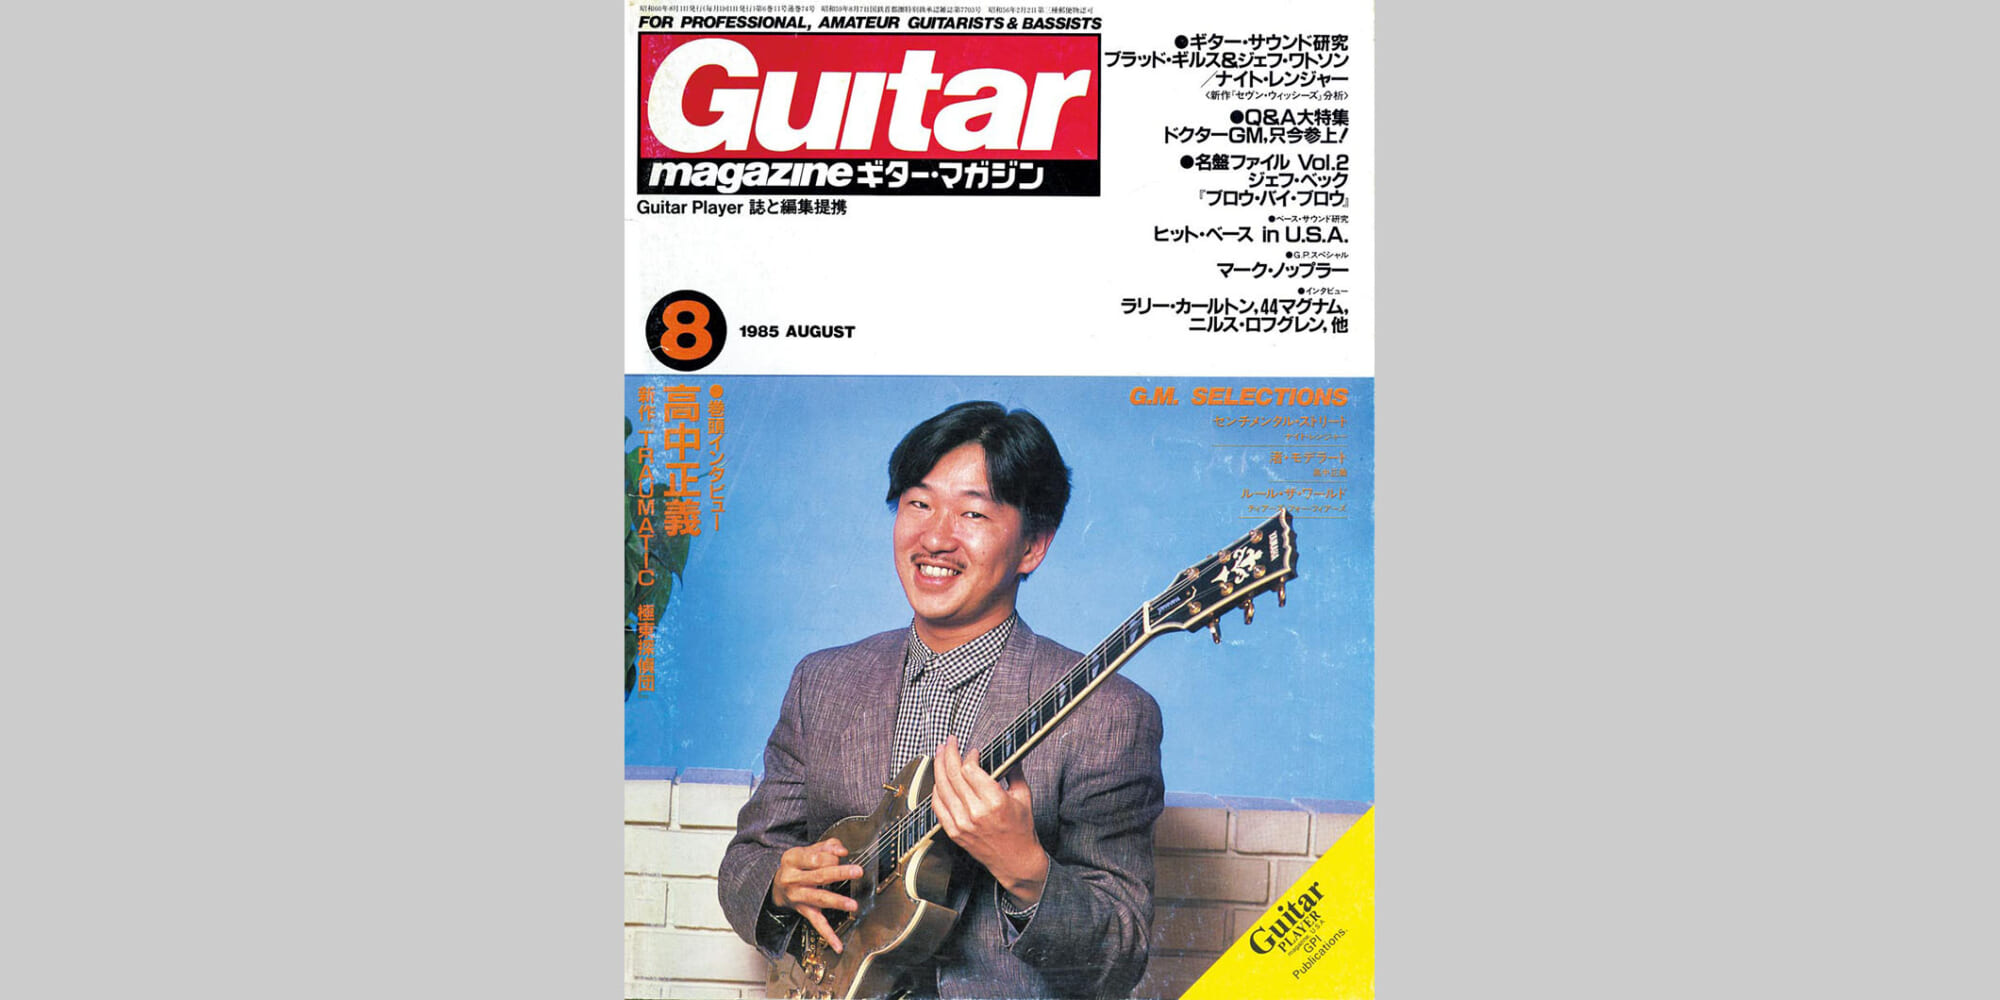 クラシックギター 信濃ギター Shinanoギター No.73 手工品 岩窪精造 ...